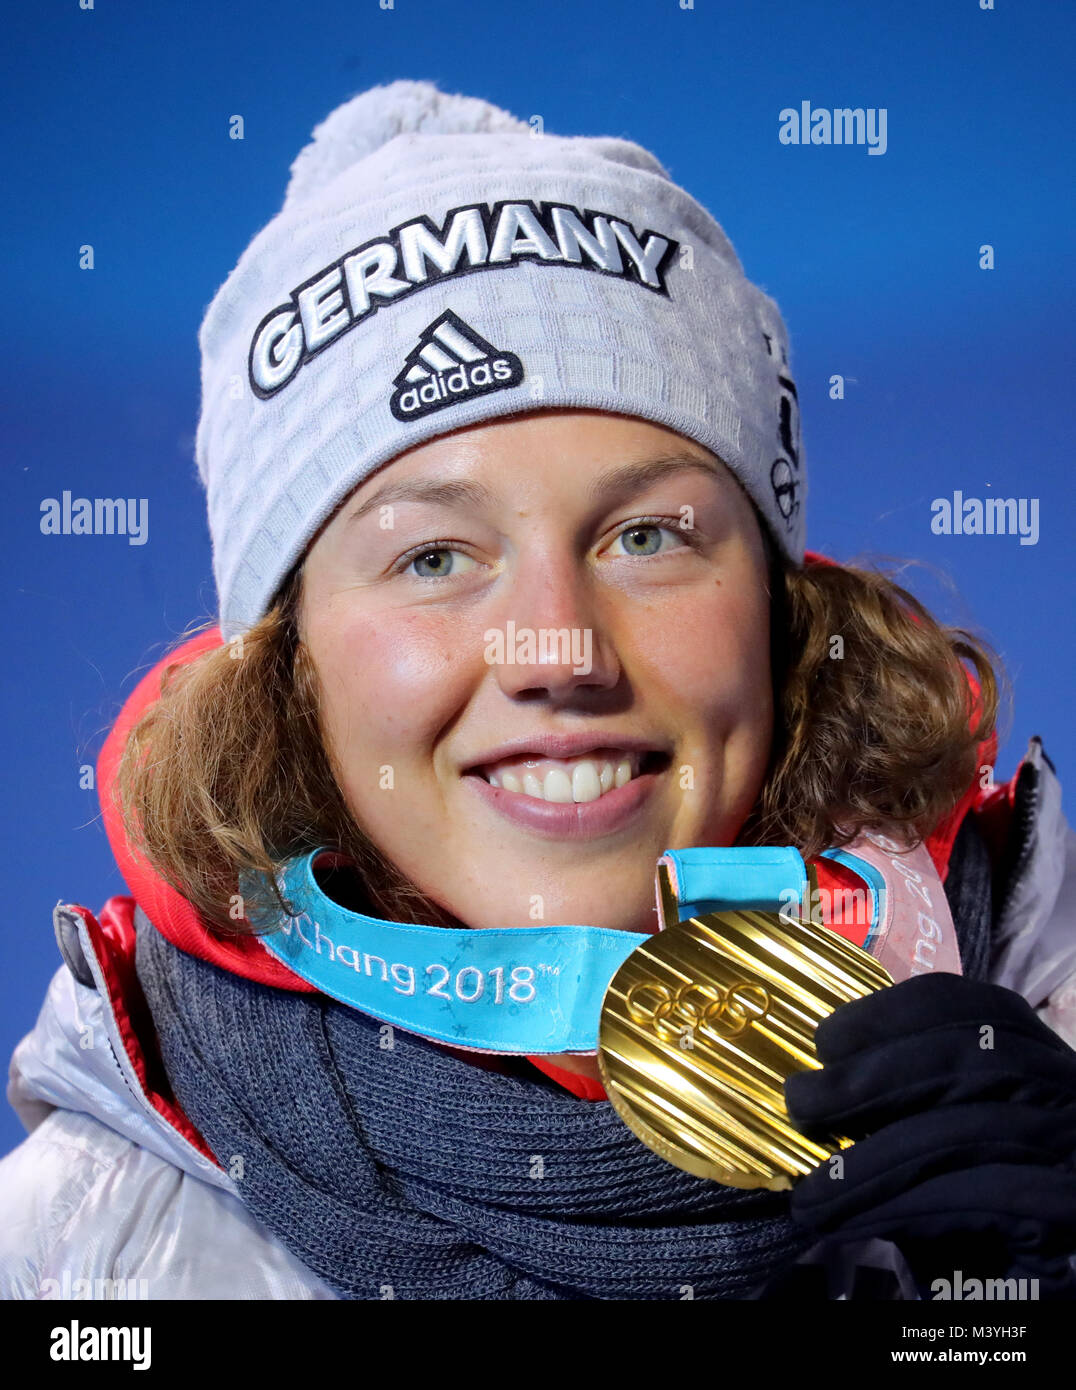 Pyeongchang, Corea del Sur. 13 Feb, 2018. Laura Dahlmeier biathlete alemana celebra su segunda medalla de oro en los Juegos Olímpicos de Invierno de Pyeongchang, Corea del Sur, 13 de febrero de 2018. Crédito: Michael Kappeler/dpa/Alamy Live News Foto de stock